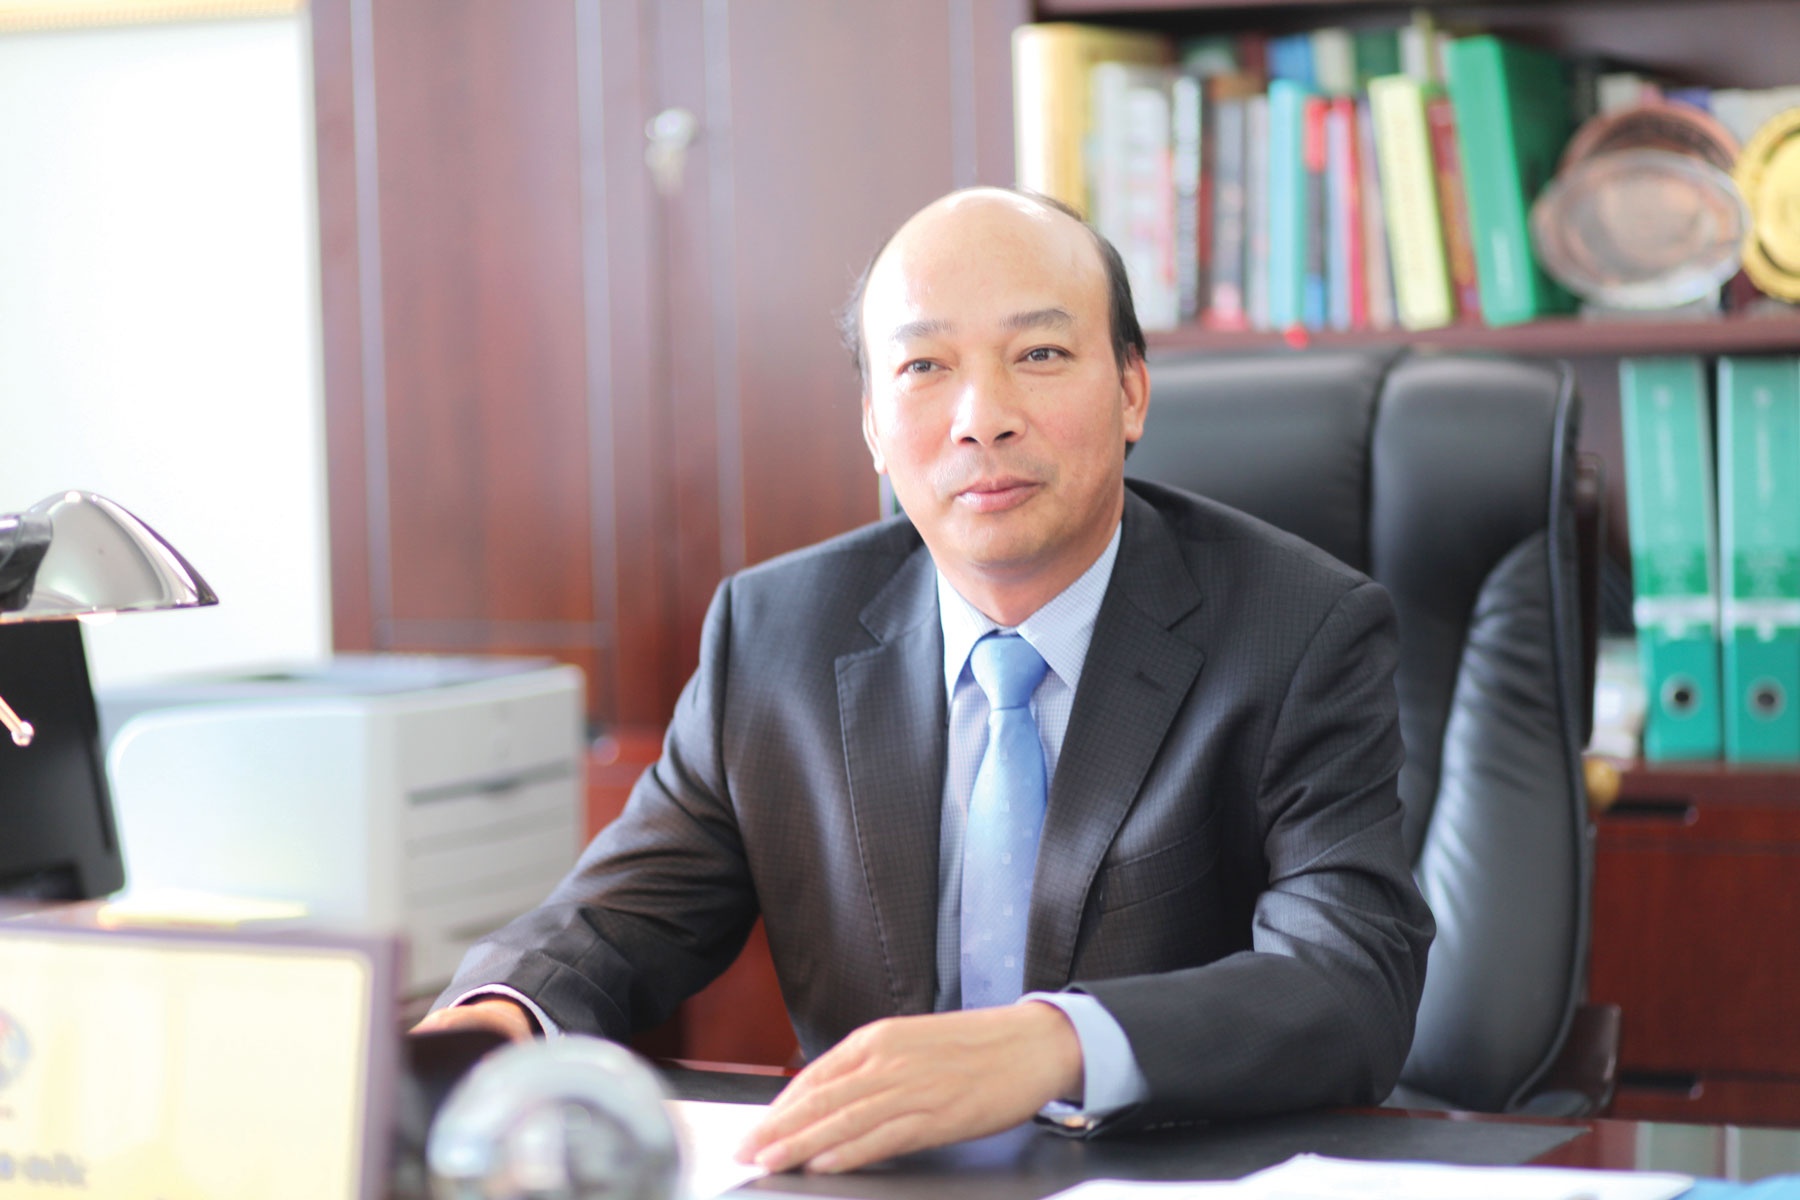 Thủ tướng Chính phủ kỷ luật Chủ tịch HĐTV Tập đoàn Công nghiệp Than - Khoáng sản Việt Nam - Ảnh 1.